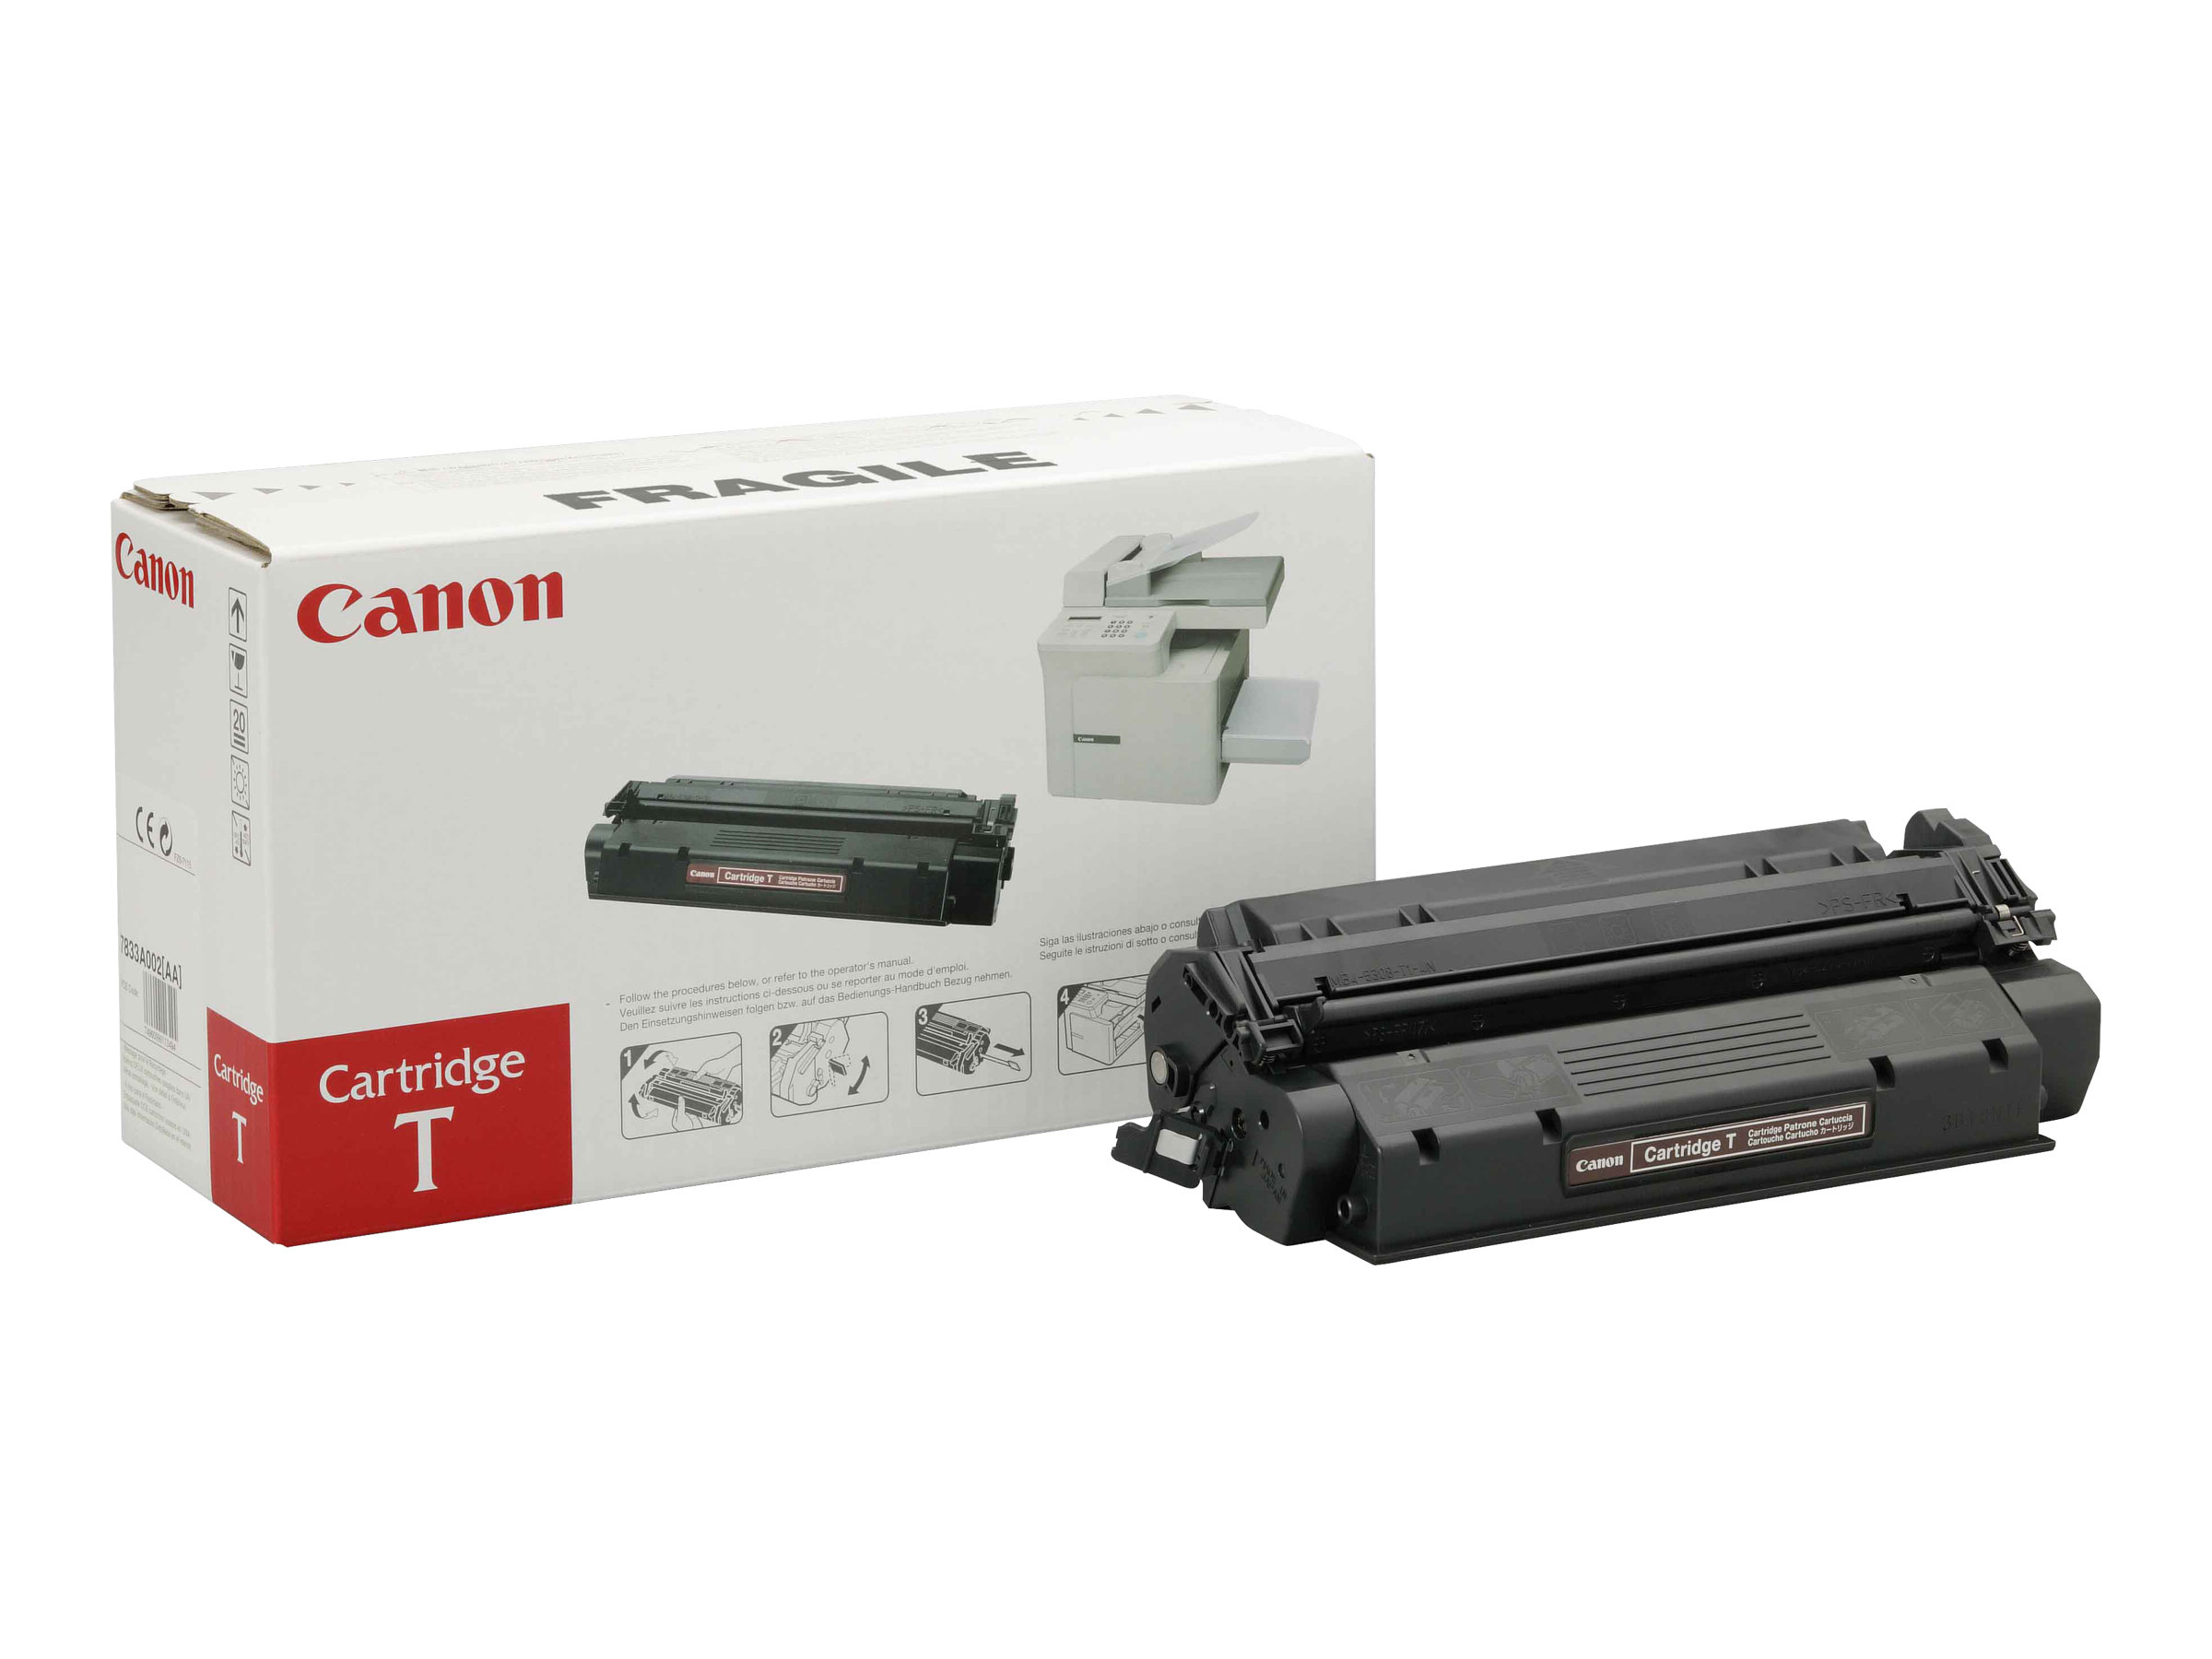 Canon T - Noir - original - noir - cartouche de toner - pour FAX L380, L380S, L390, L400; ImageCLASS D320, D340; LASER CLASS 310, 510; PCD320, D340 - 7833A002 - Cartouches de toner Canon